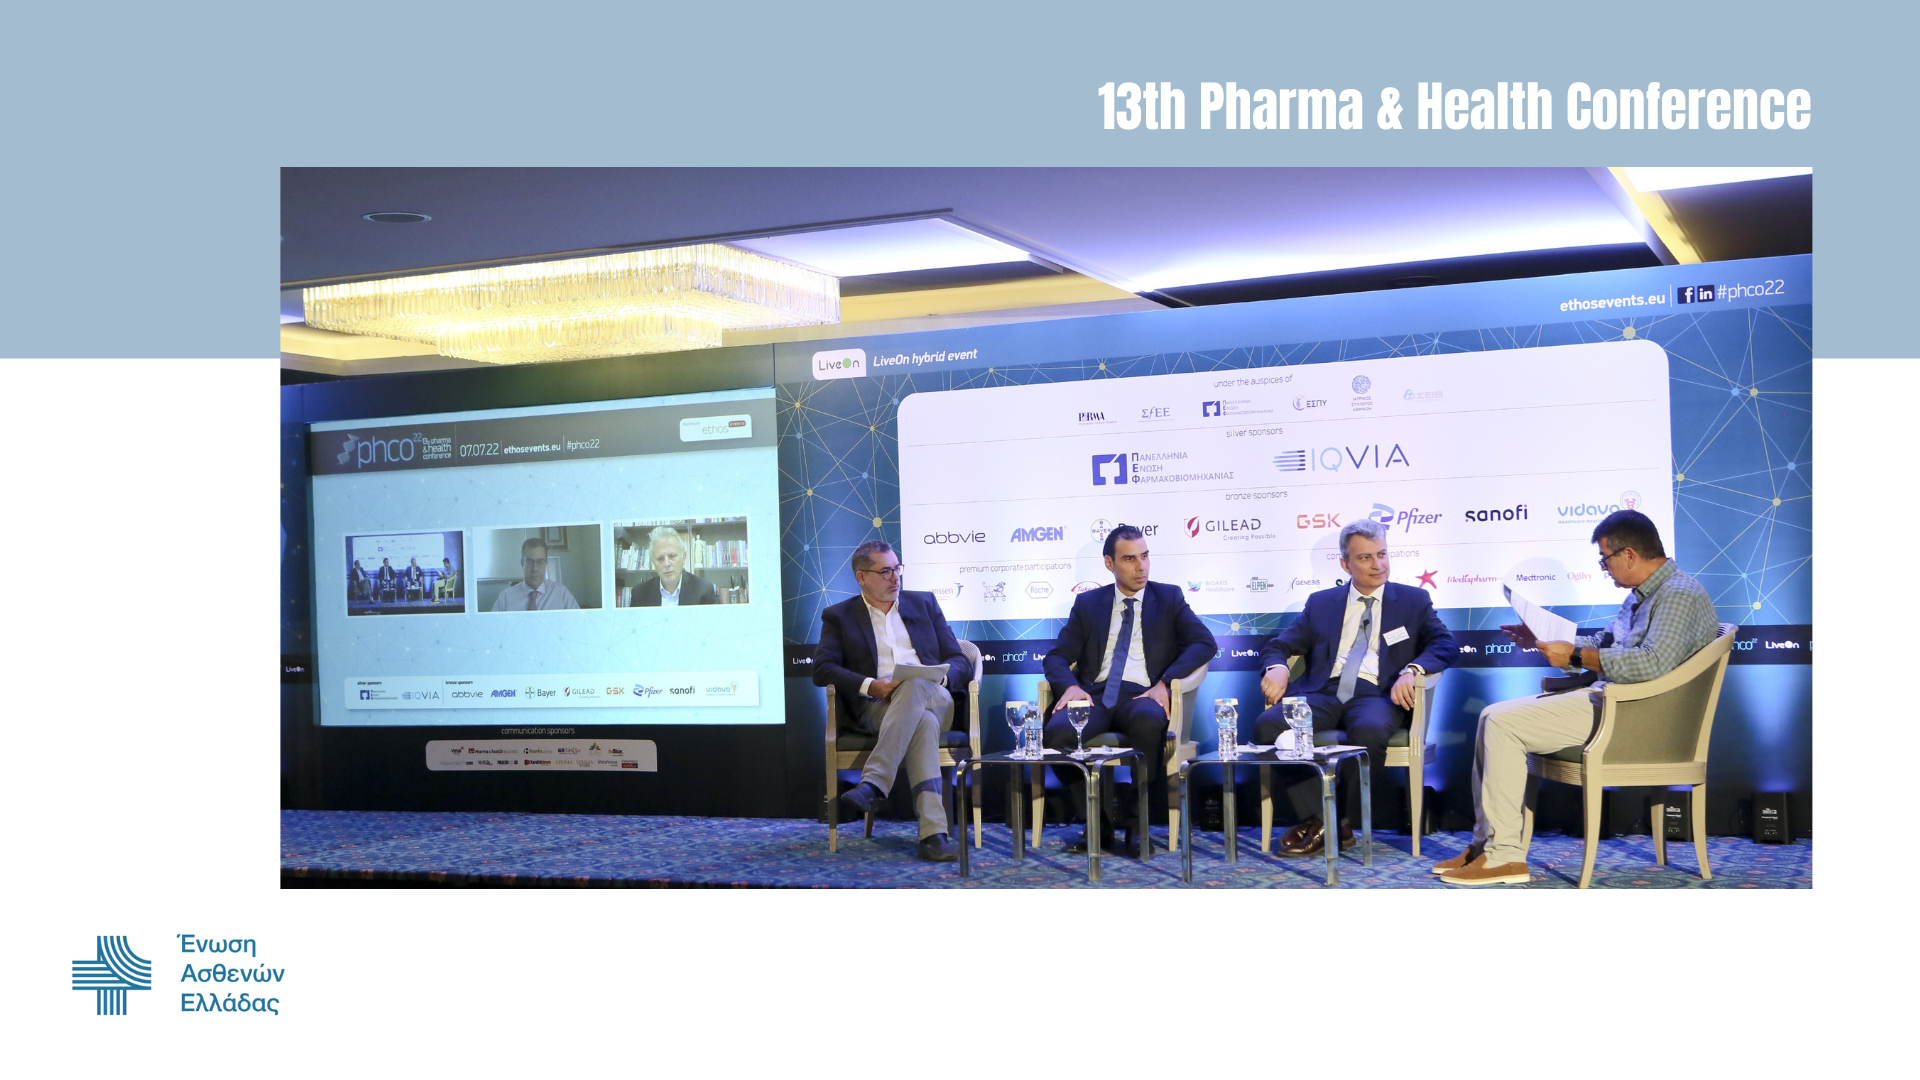 Ένωση Ασθενών: Συμμετοχή στις εργασίες του 13th Pharma & Health Conference